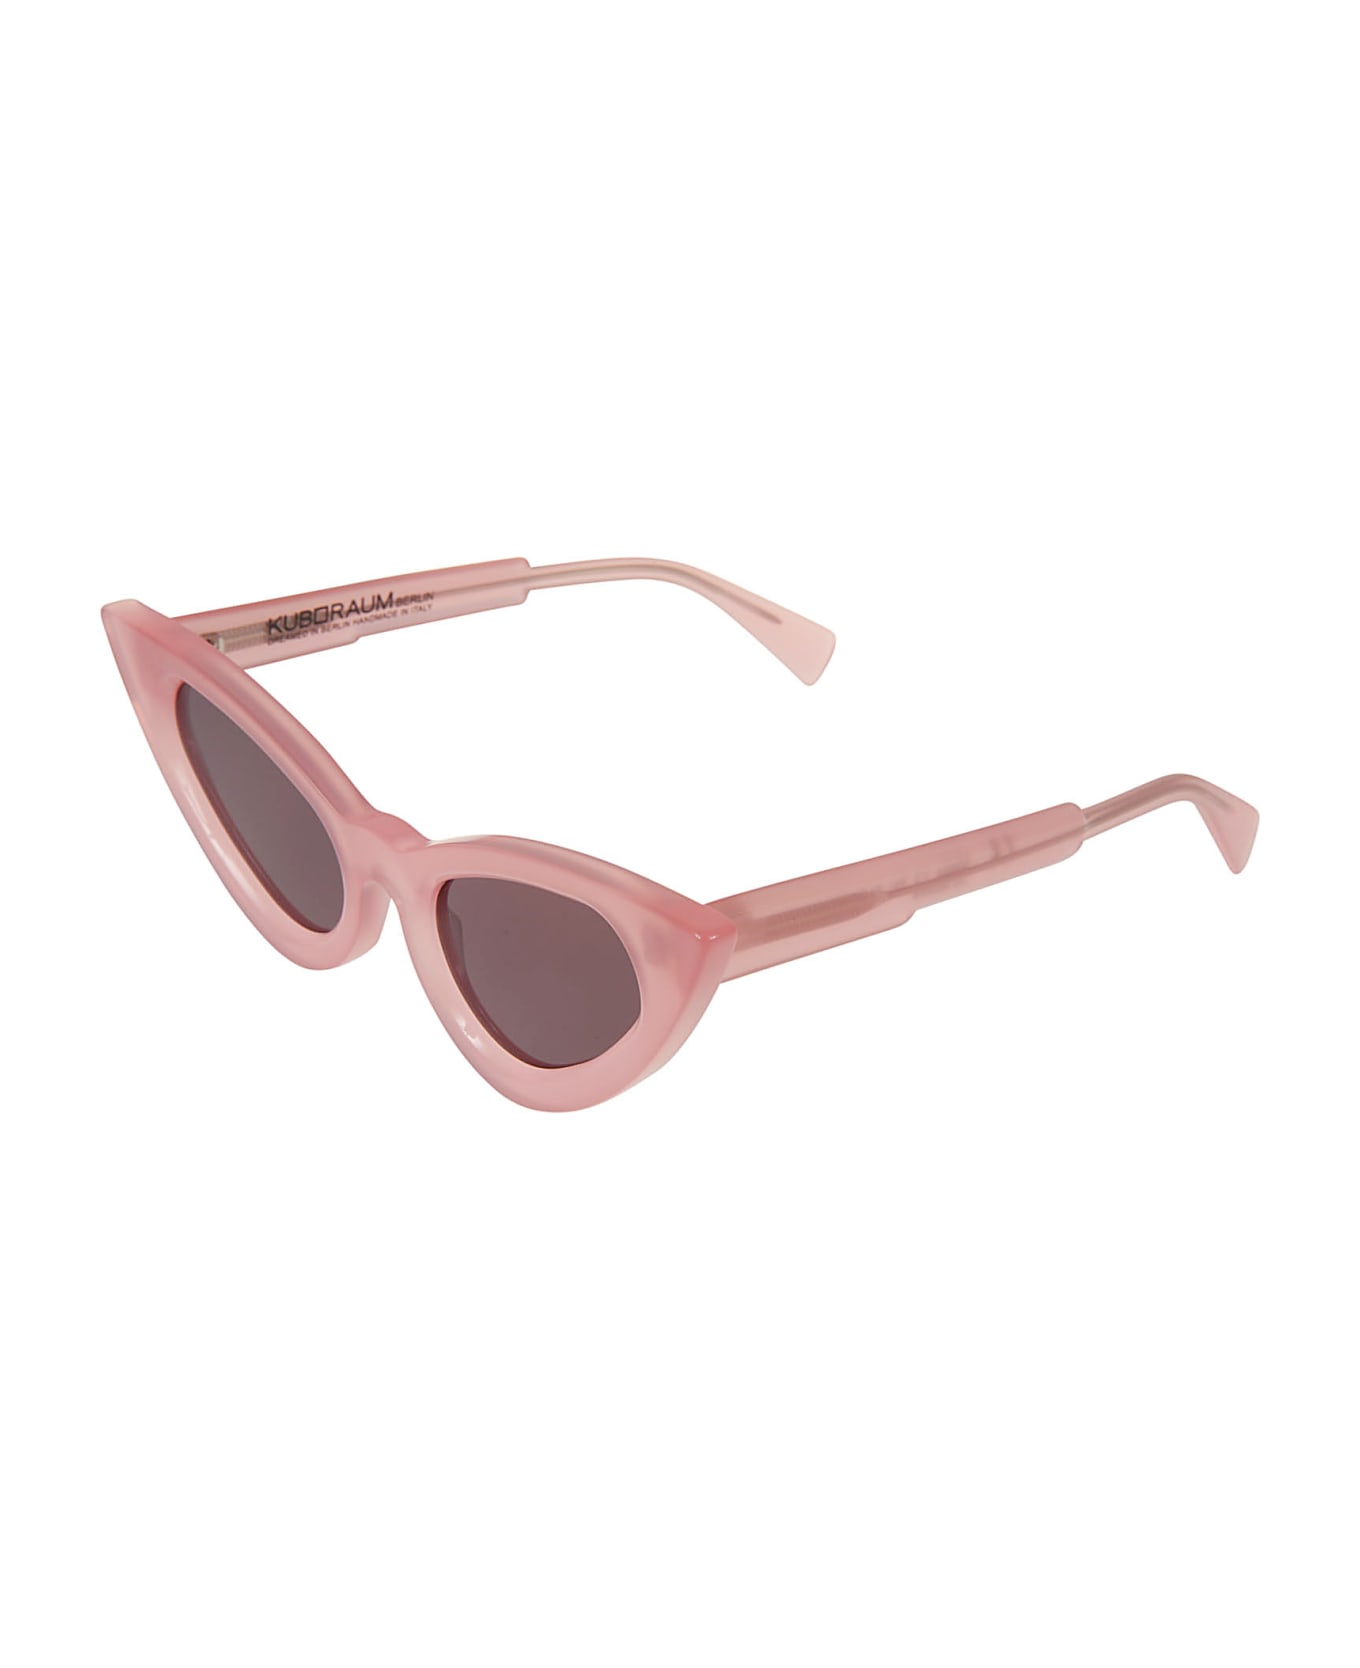 Kuboraum Y3 Sunglasses - Pink サングラス